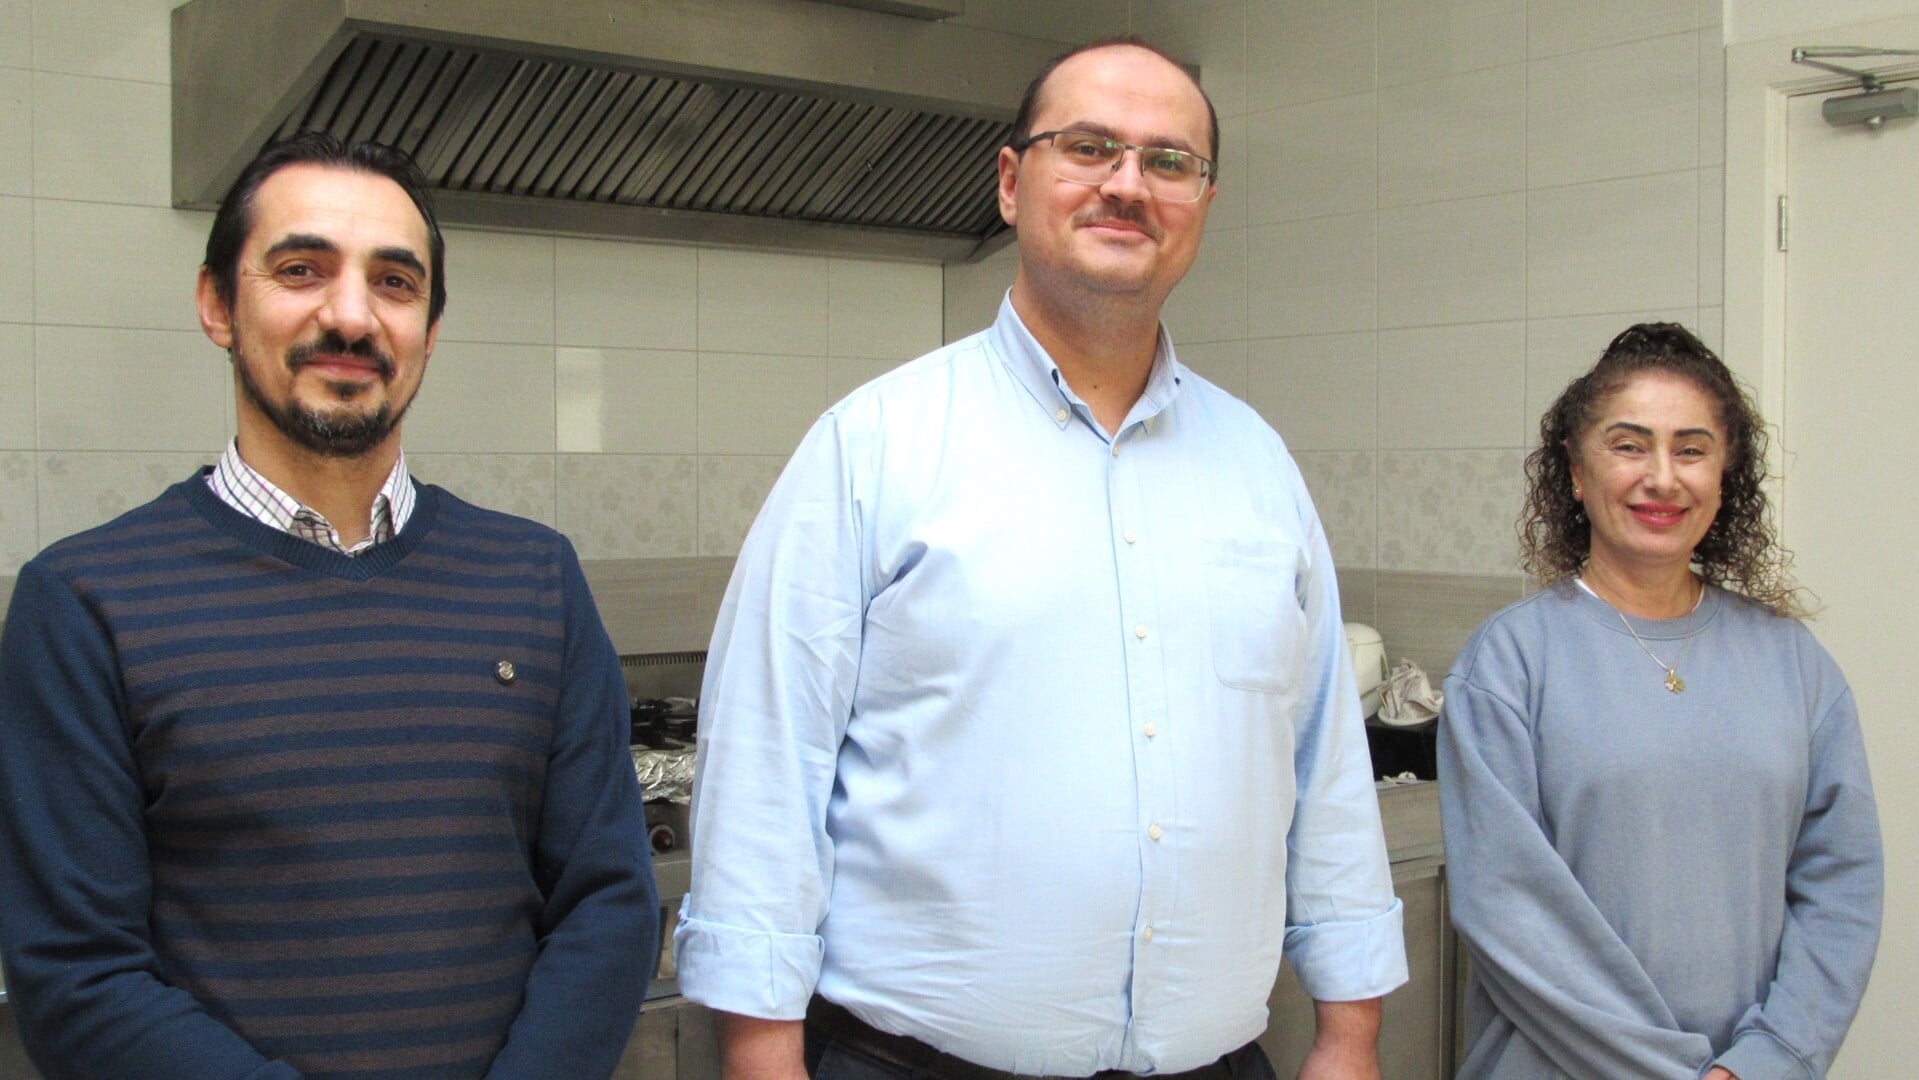 Mehmet Çiçek, imam Mustafa Mercan en Songül van Brakel in de keuken van SICM waar de Iftarmaaltijd gaat worden bereid.